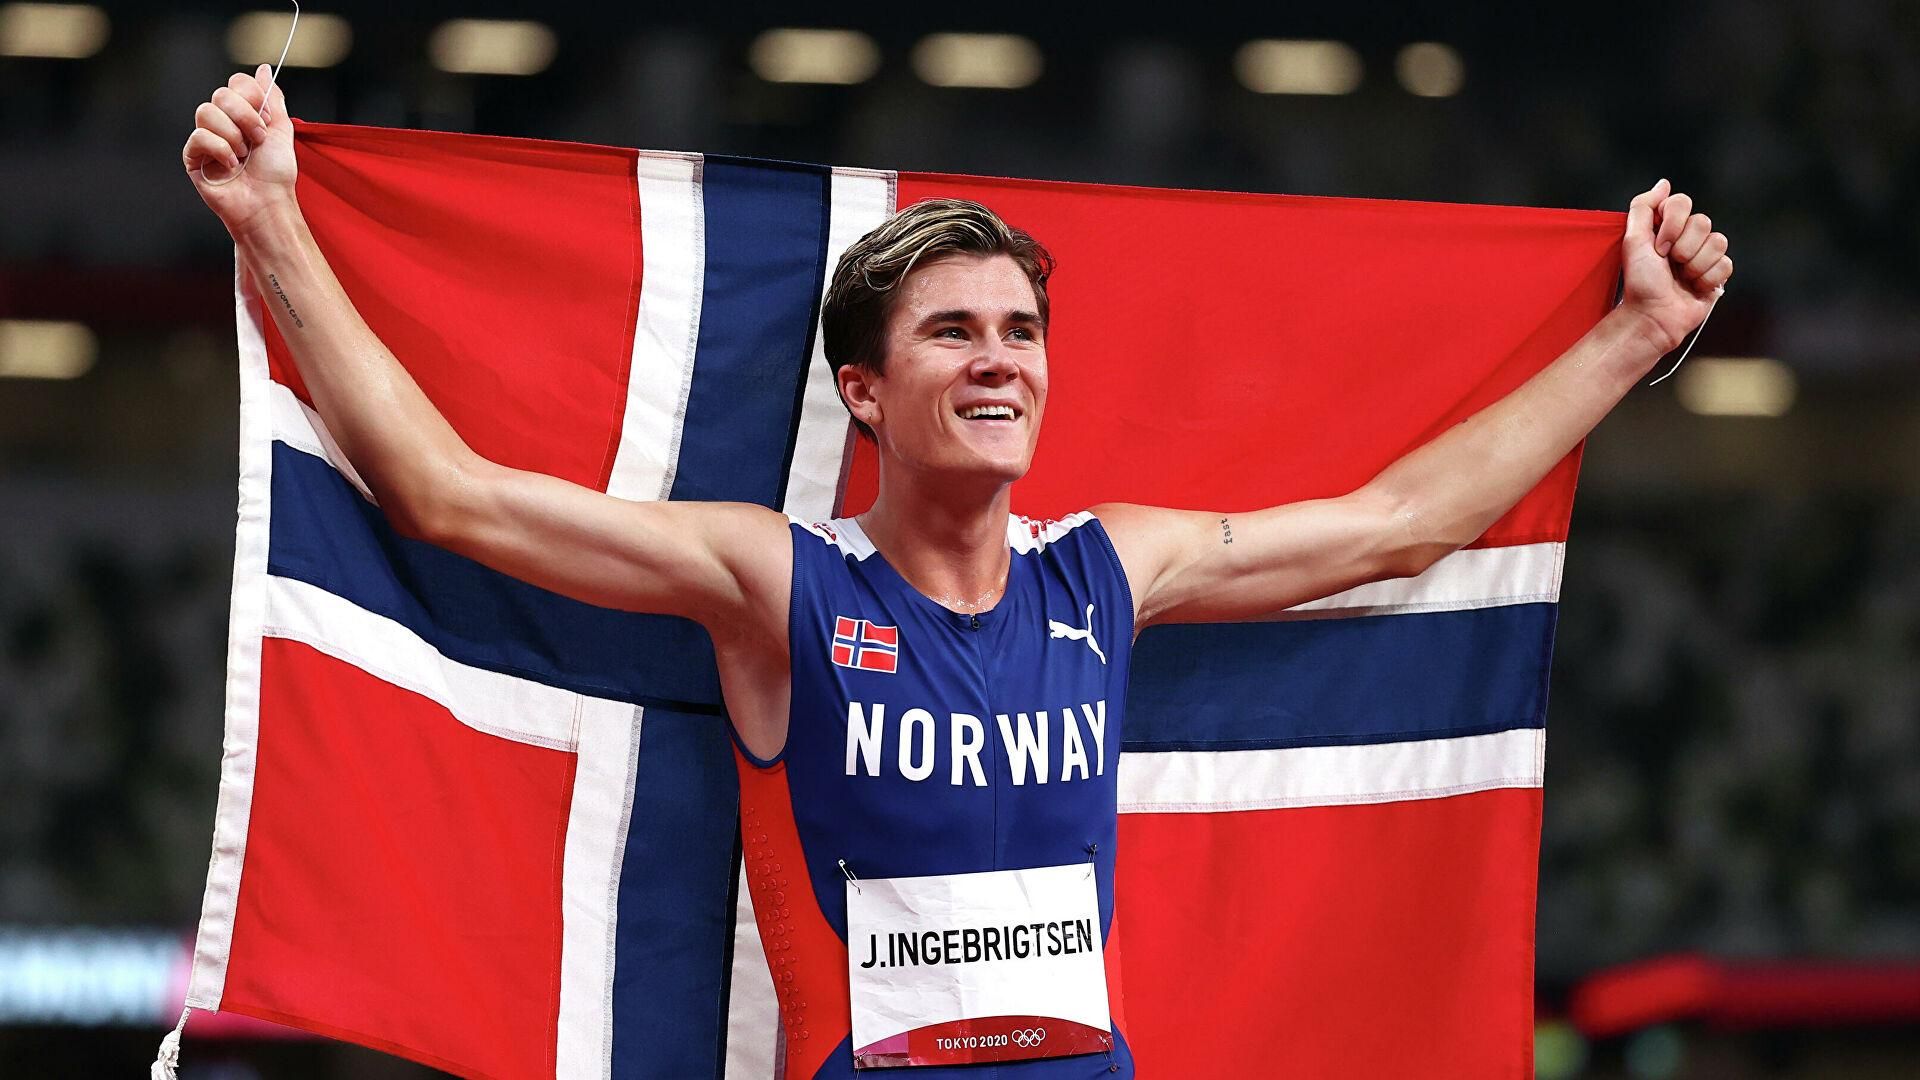 Быстрее молнии: 21-летний норвежец установил мировой рекорд по бегу на 1500 метров